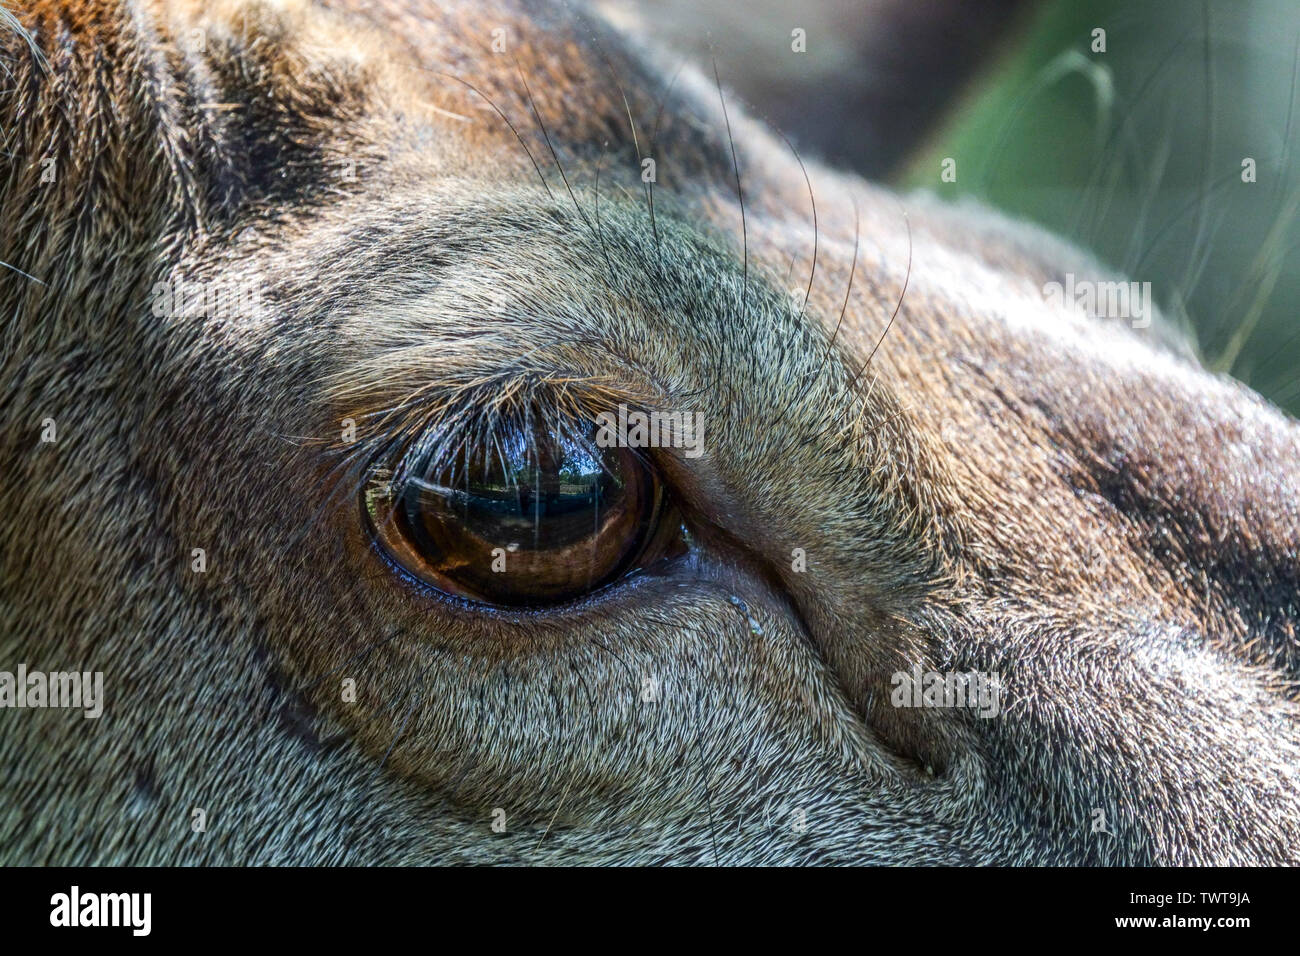 Close-up of Red Deer, Cervus elaphus eye Banque D'Images